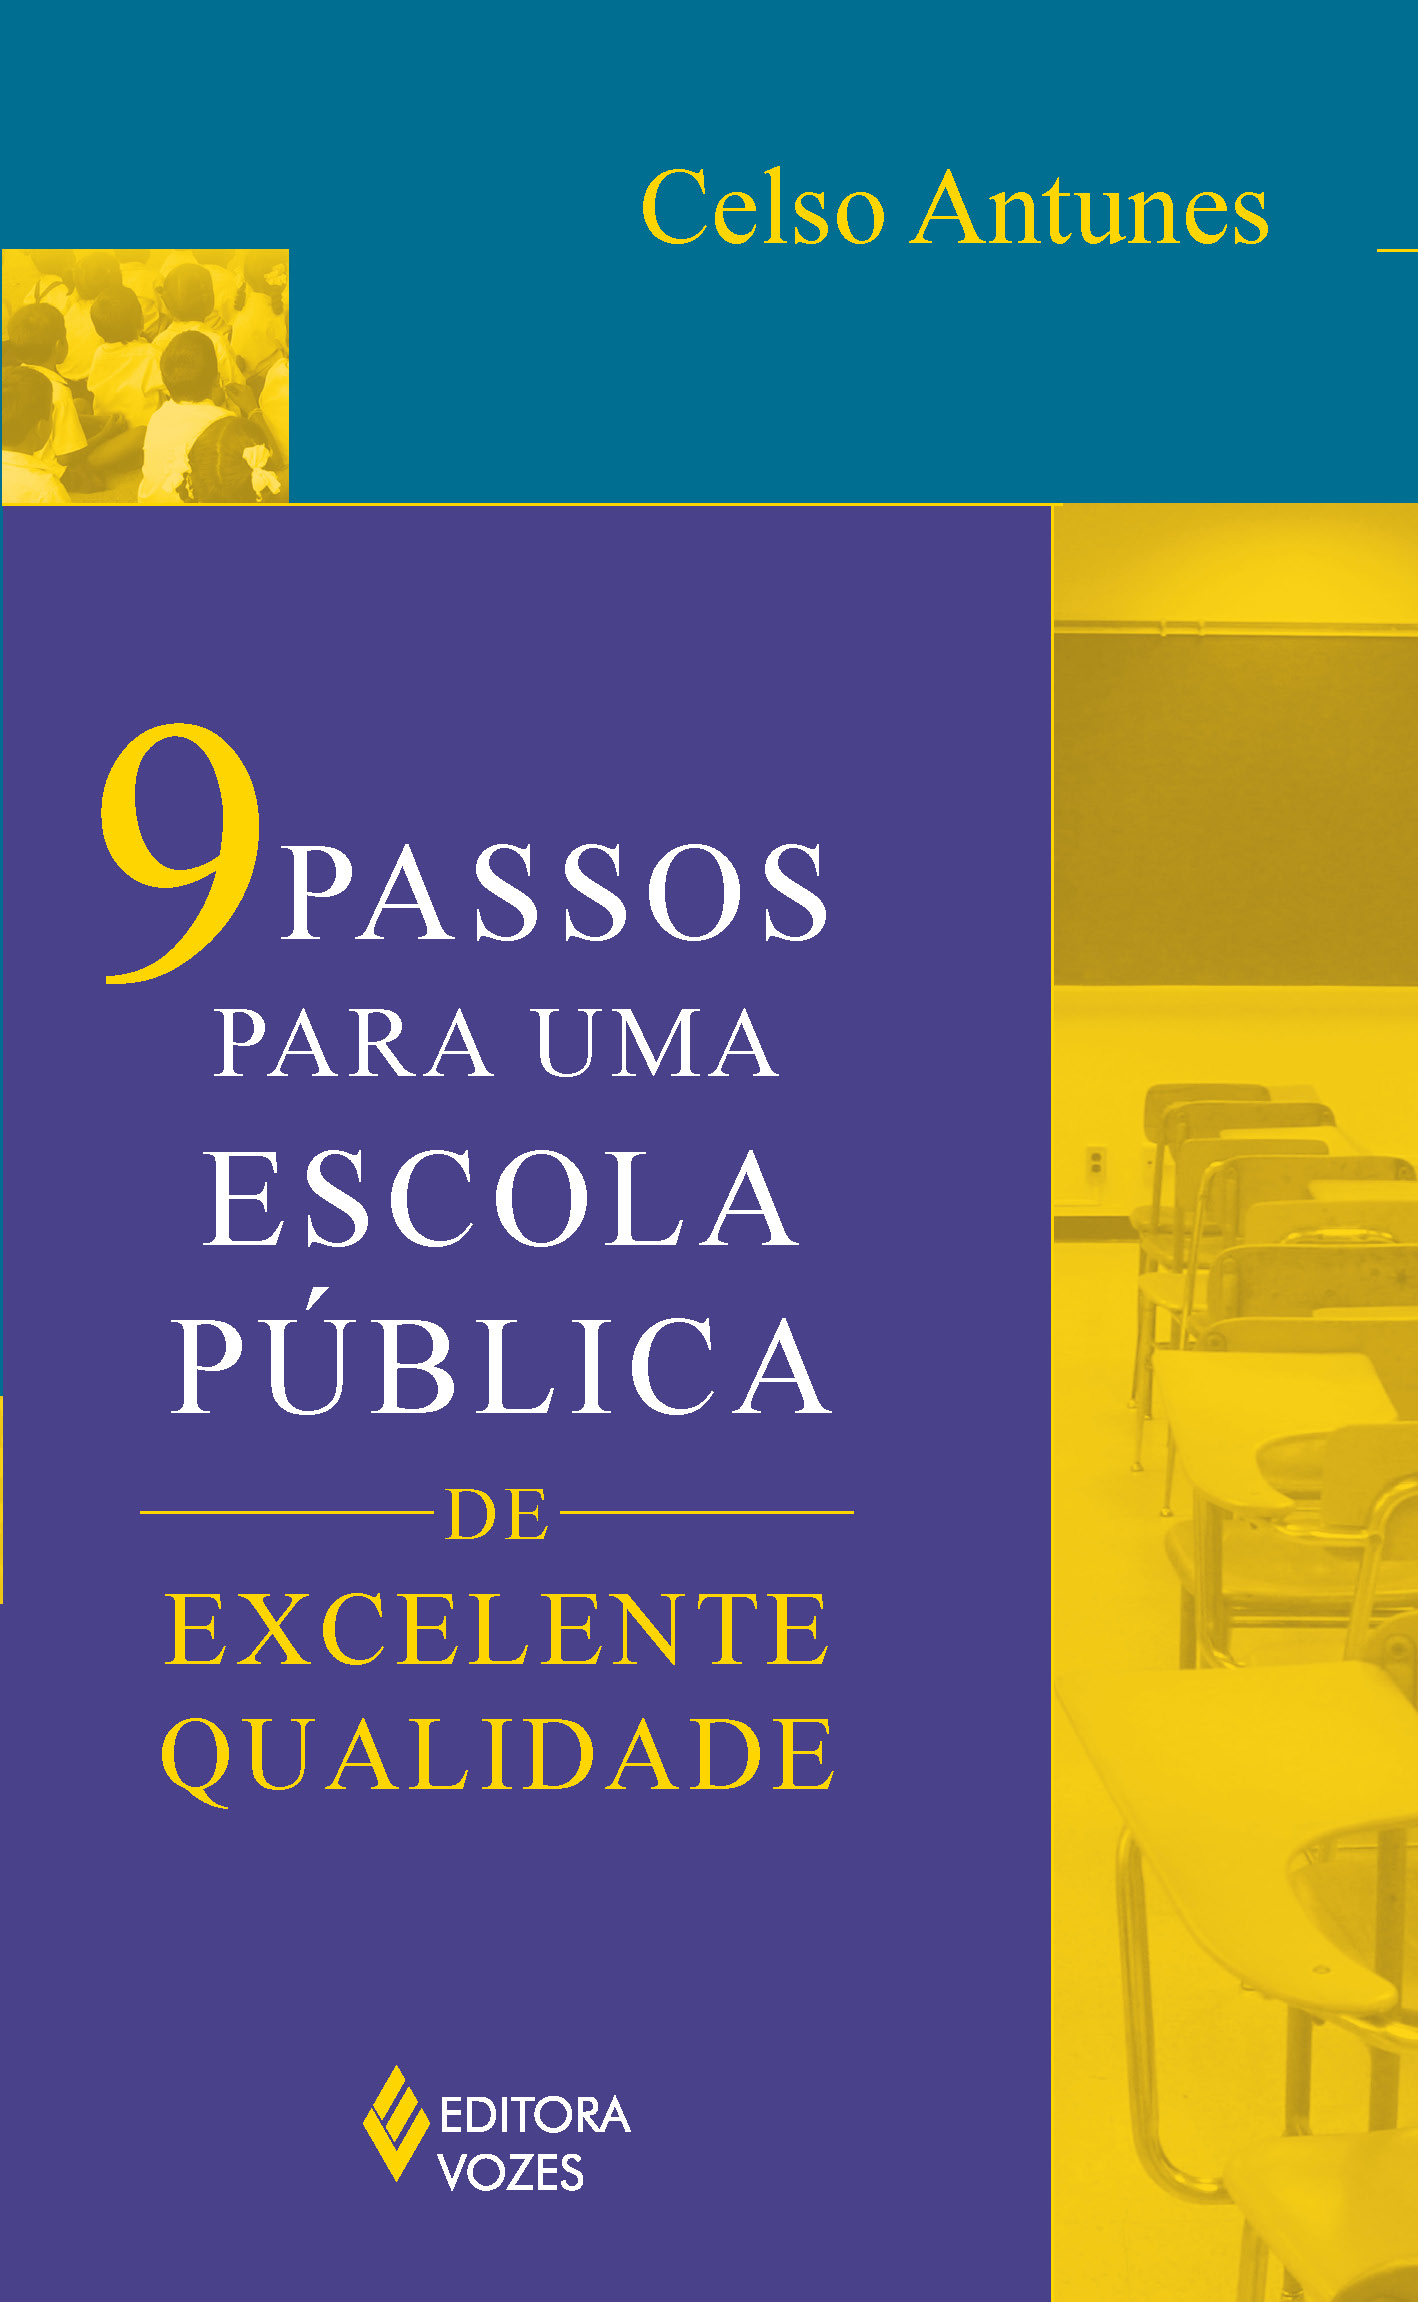 9 Passos Para uma Escola Pública de Excelente Qualidade